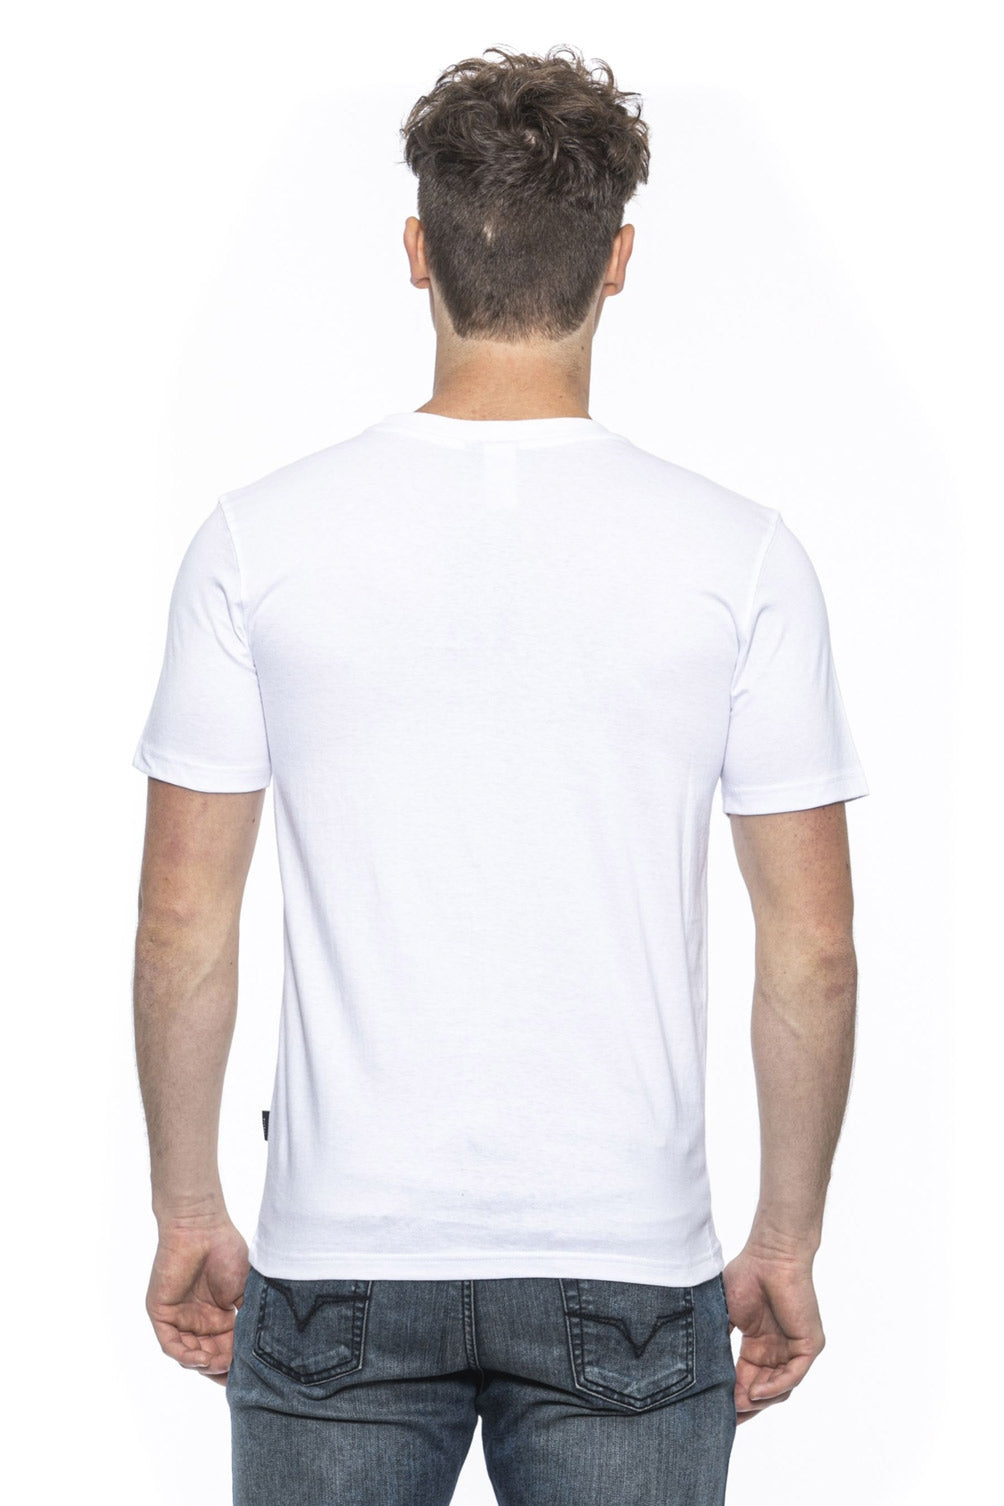 19V69 Italia Mens T-Shirt White ERIC WHITE